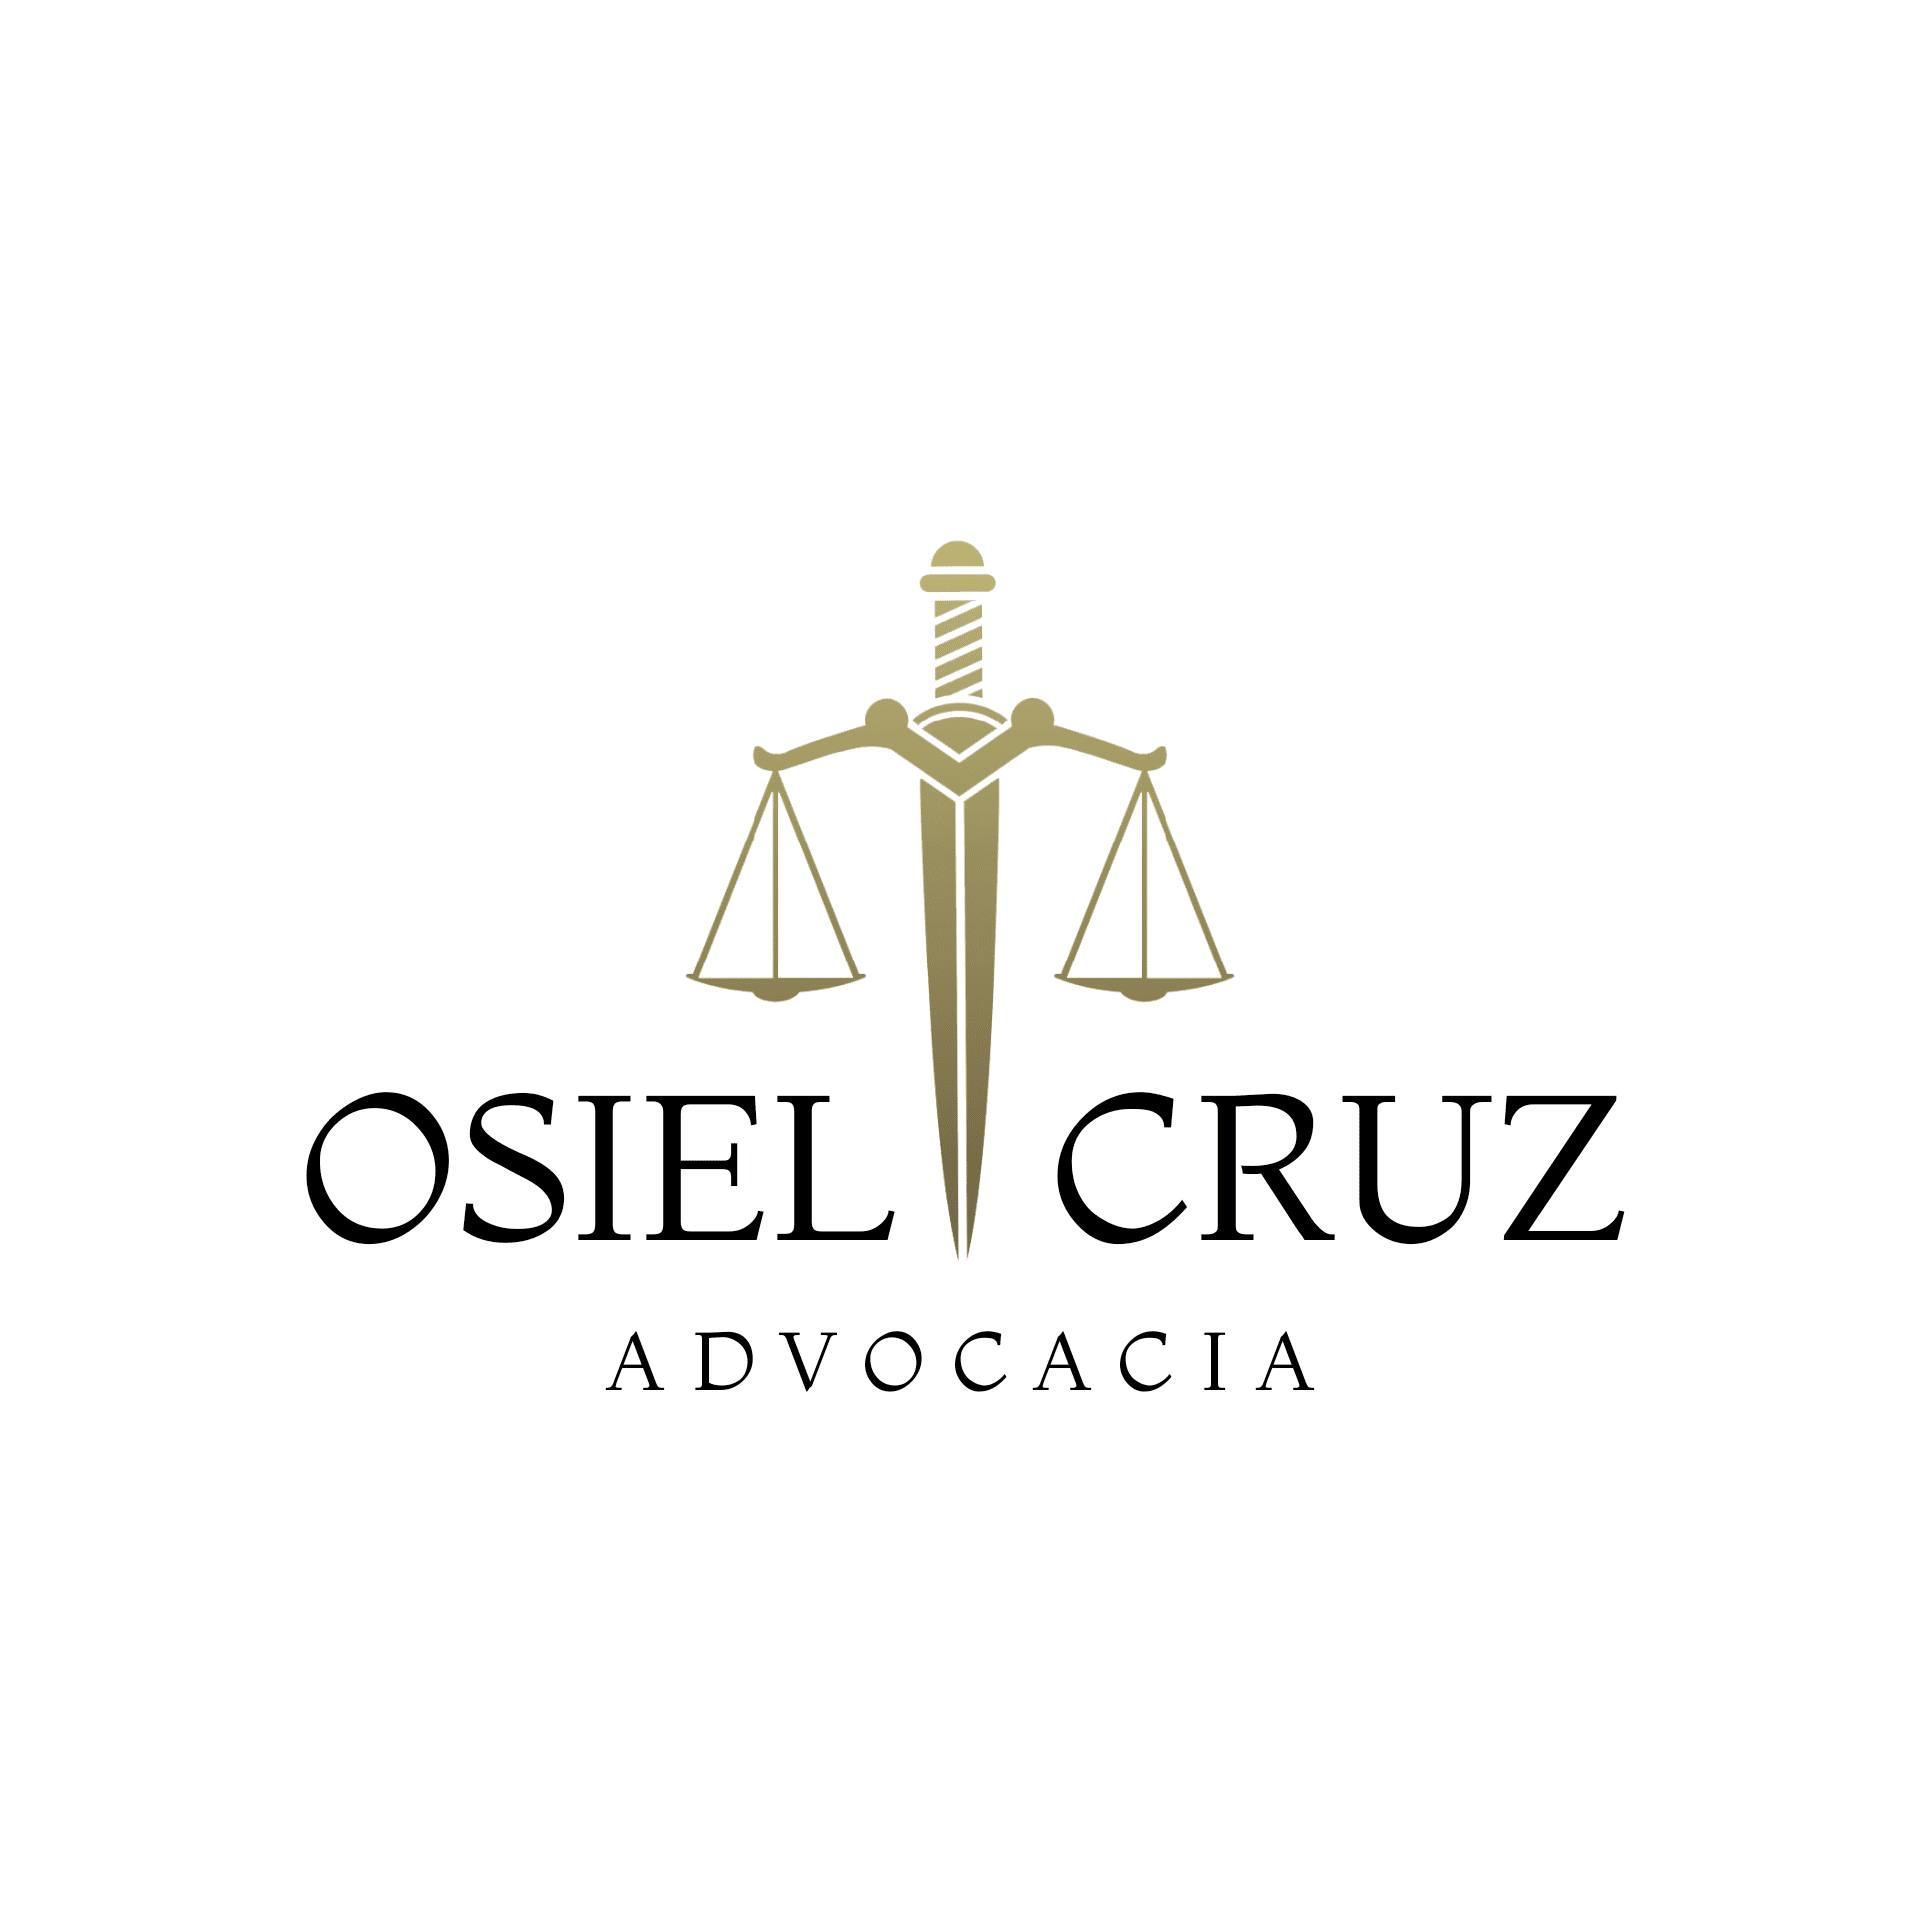 Osiel Cruz Advocacia